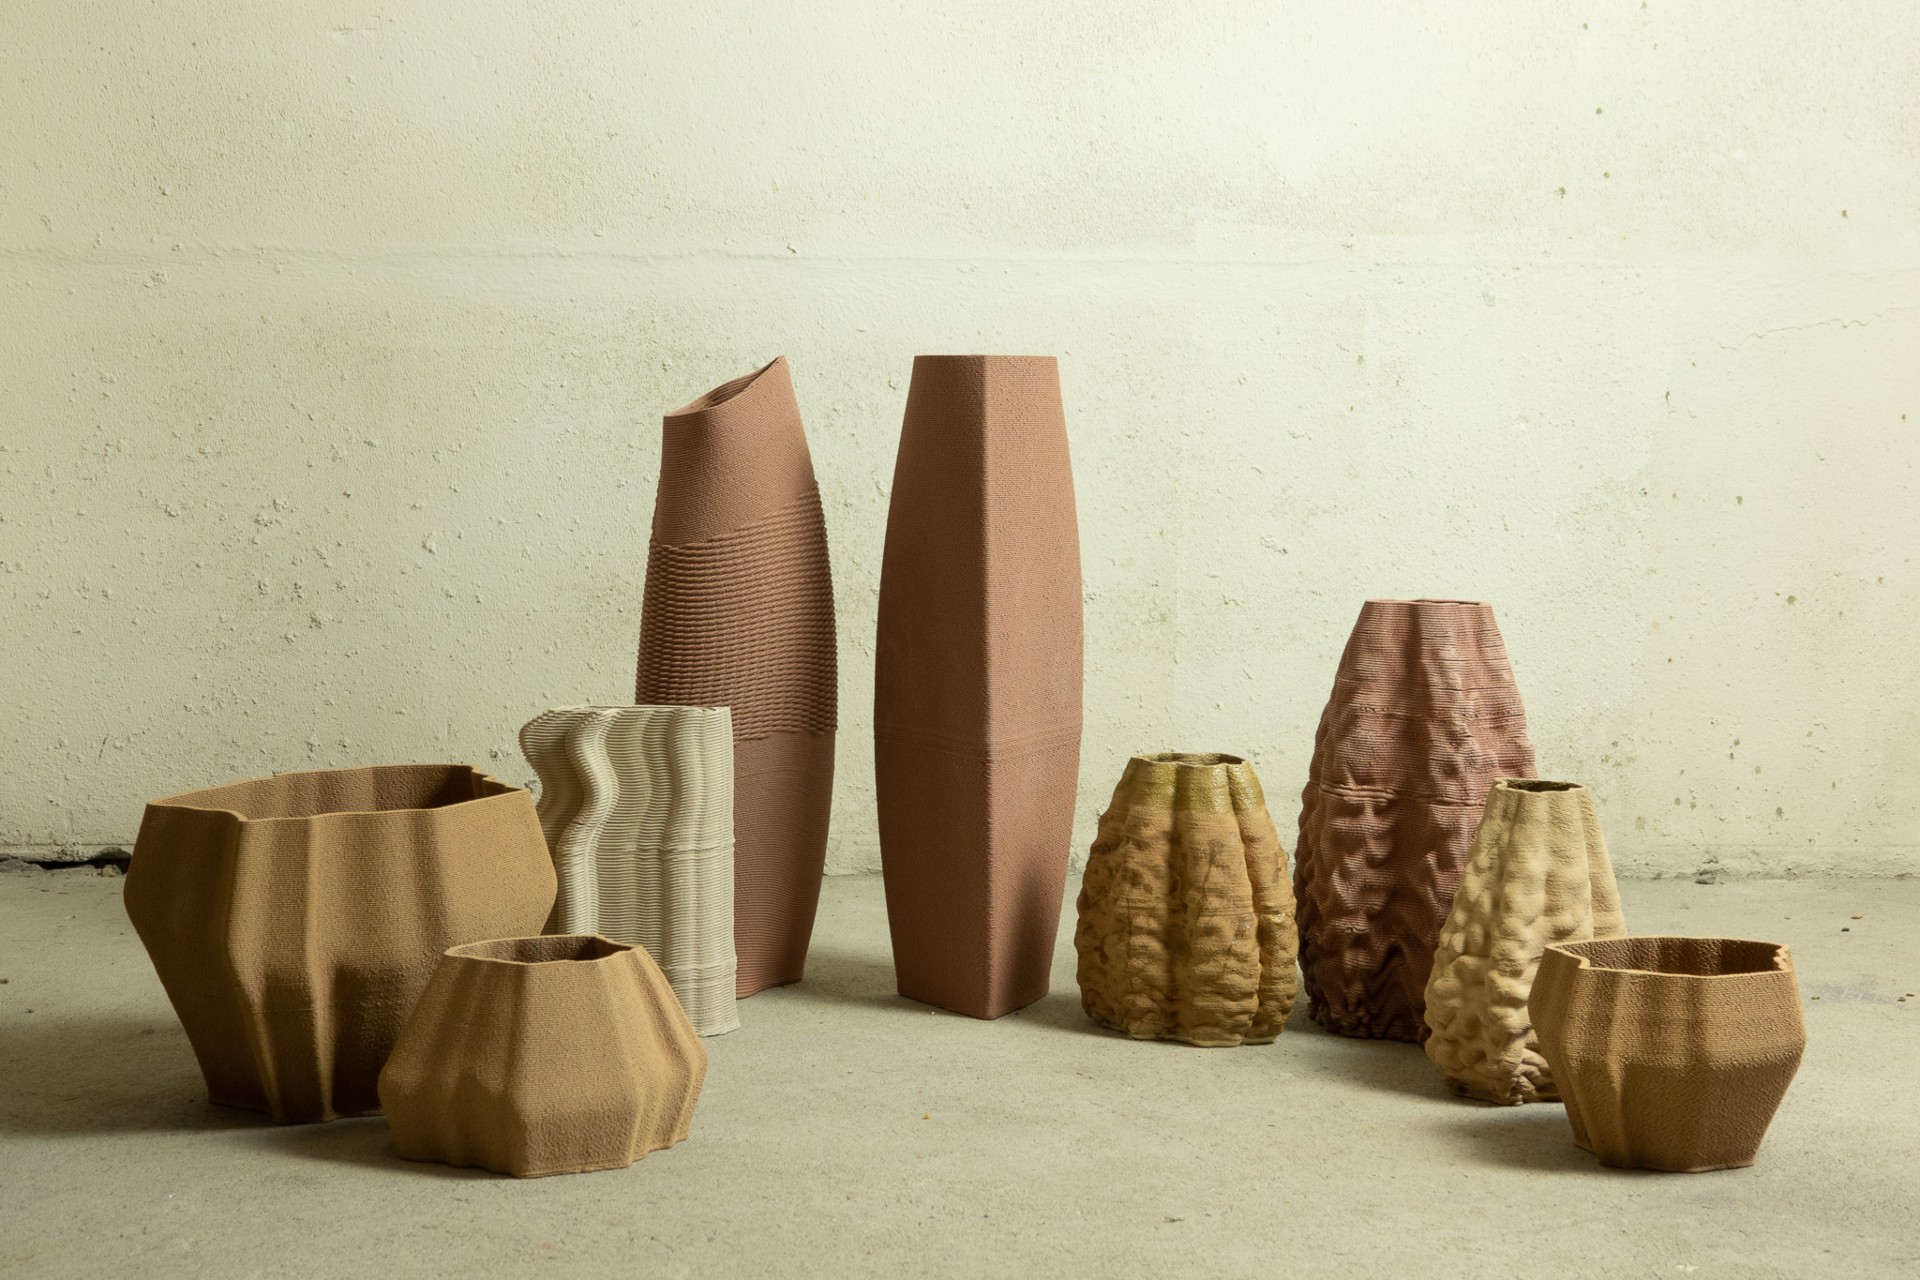 Vasos de cerâmica nas cores marrom e bege